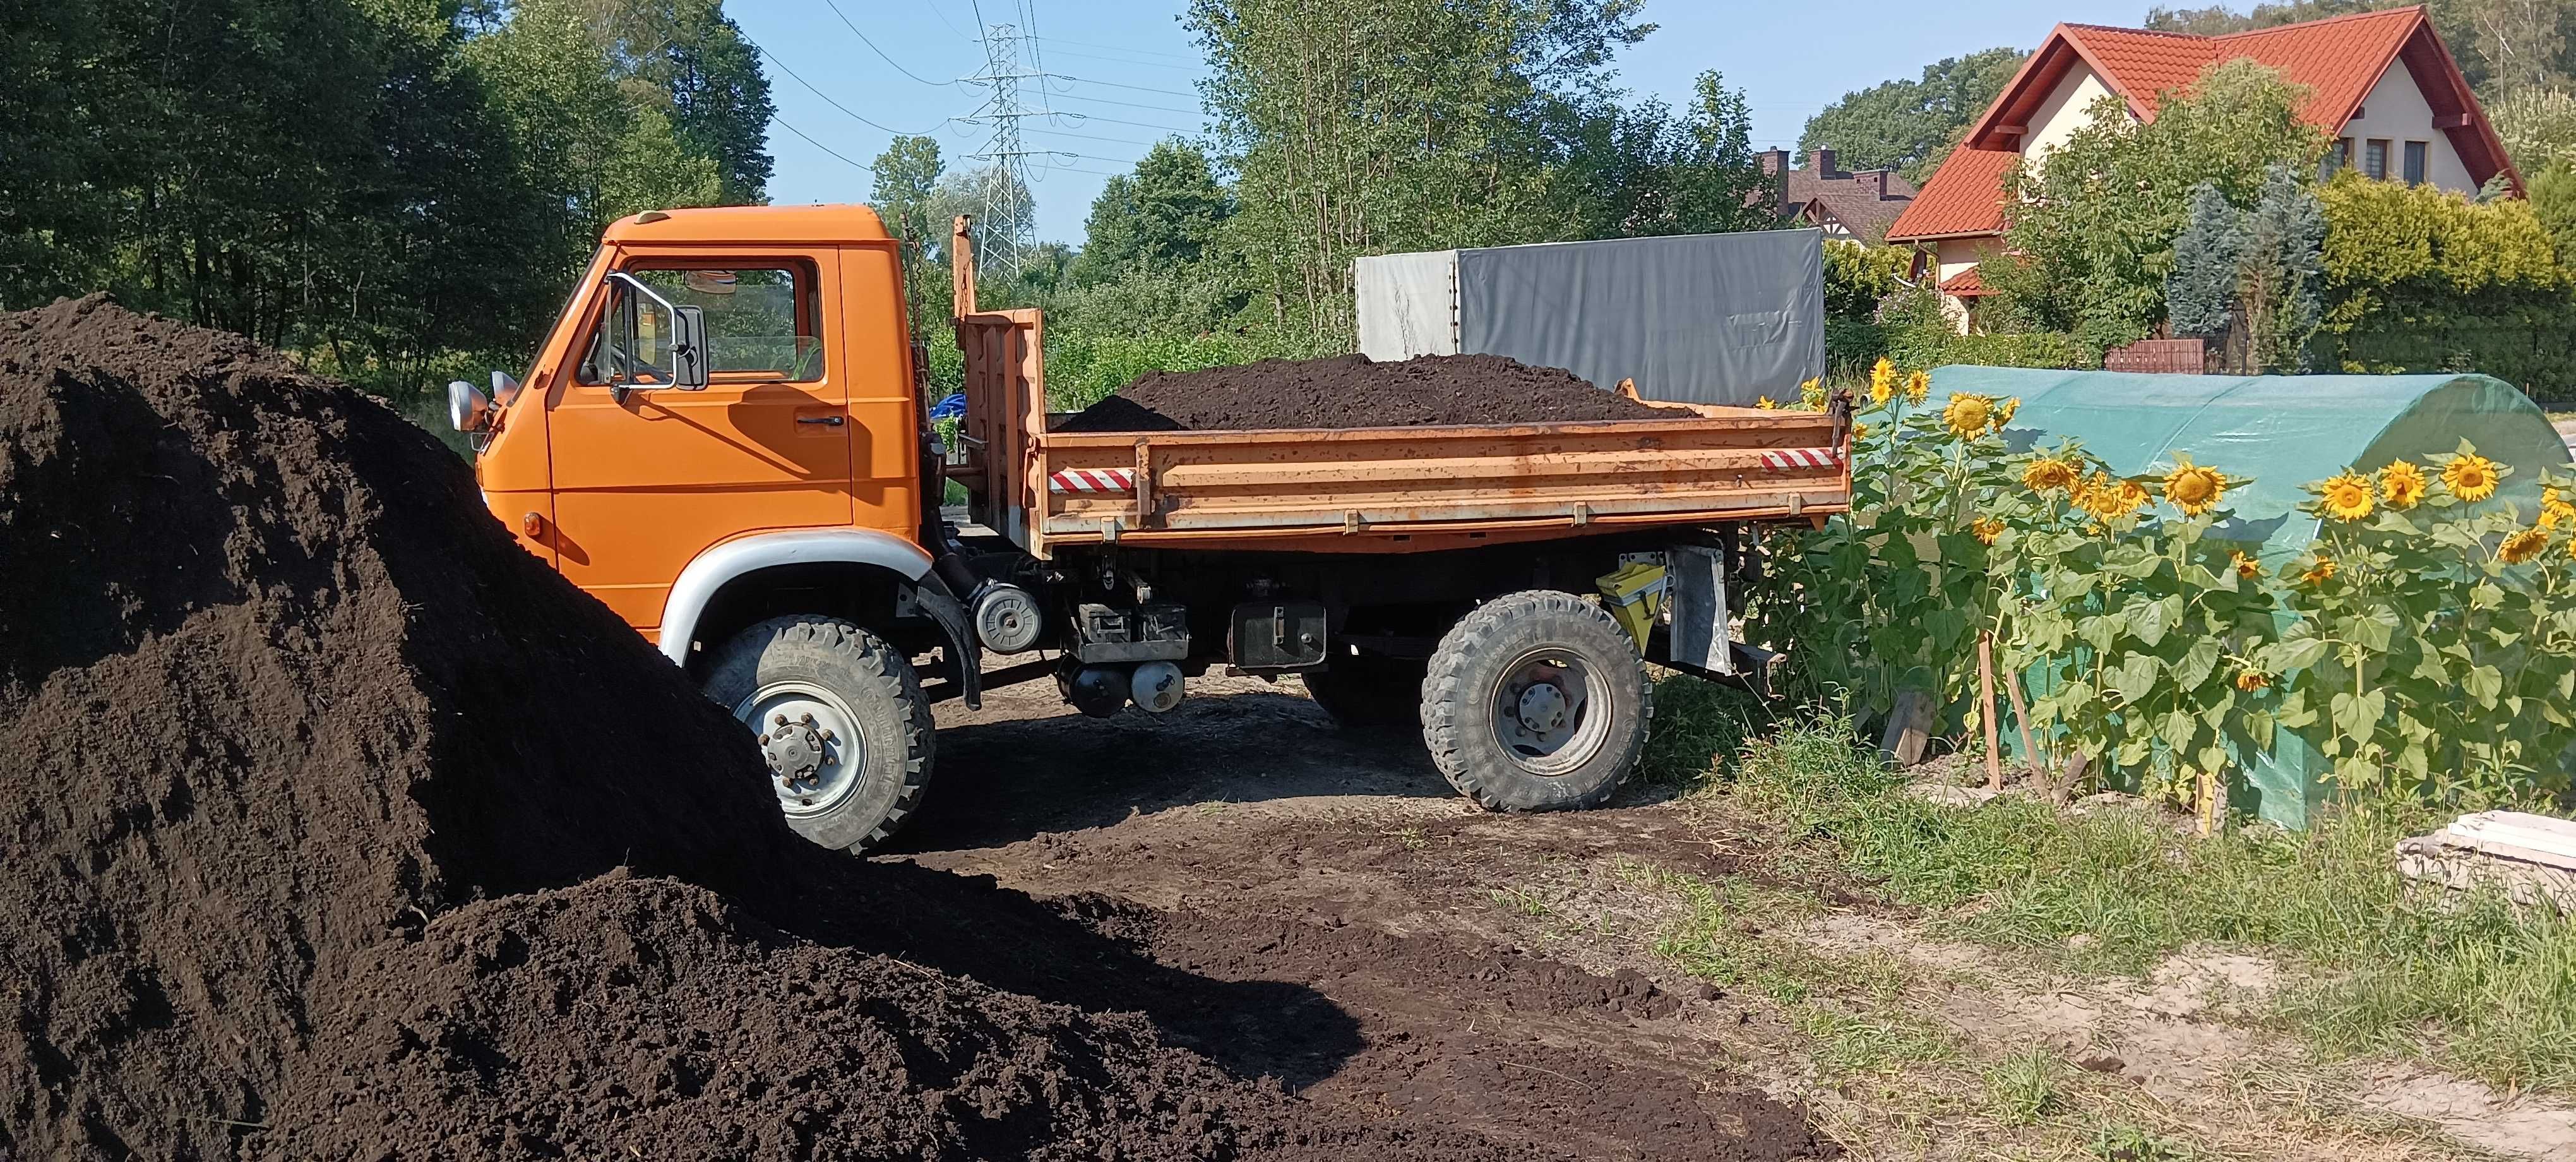 Czarna Ziemia ogrodnicza Humus - transport 1-6 t